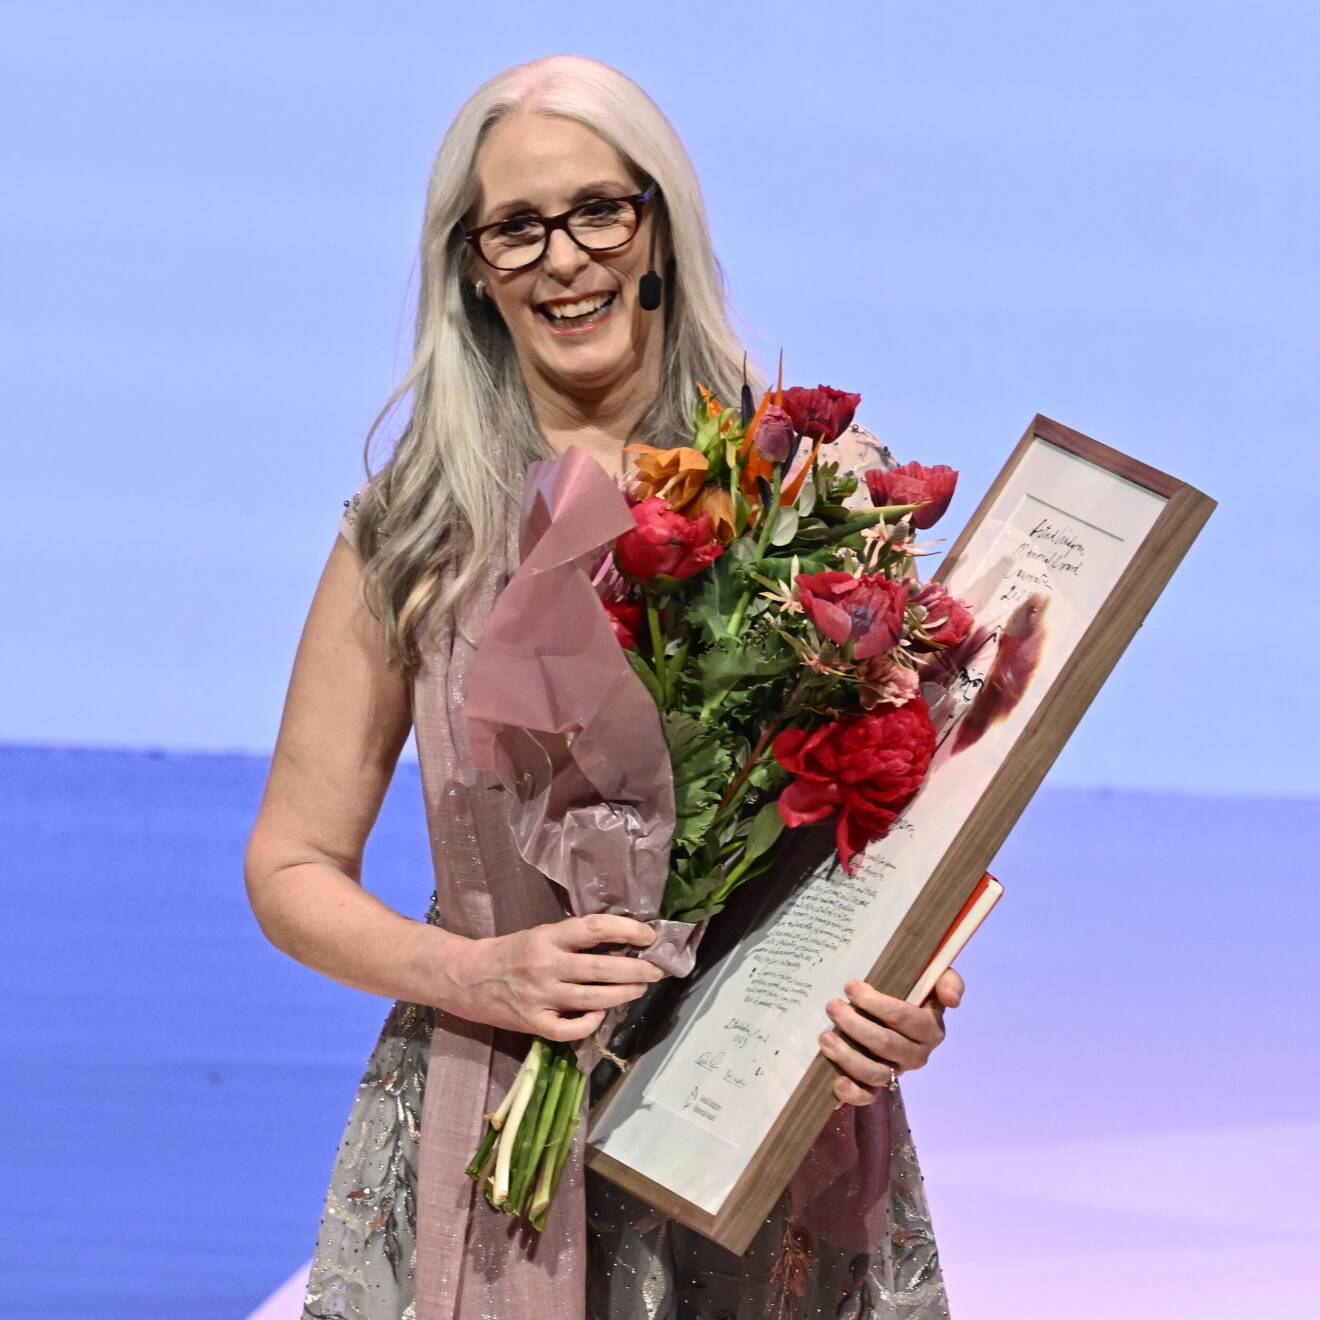 Laurie Halse Anderson, 2023 års mottagare av Astrid Lindgren-priset eller Astrid Lindgren Memorial Award